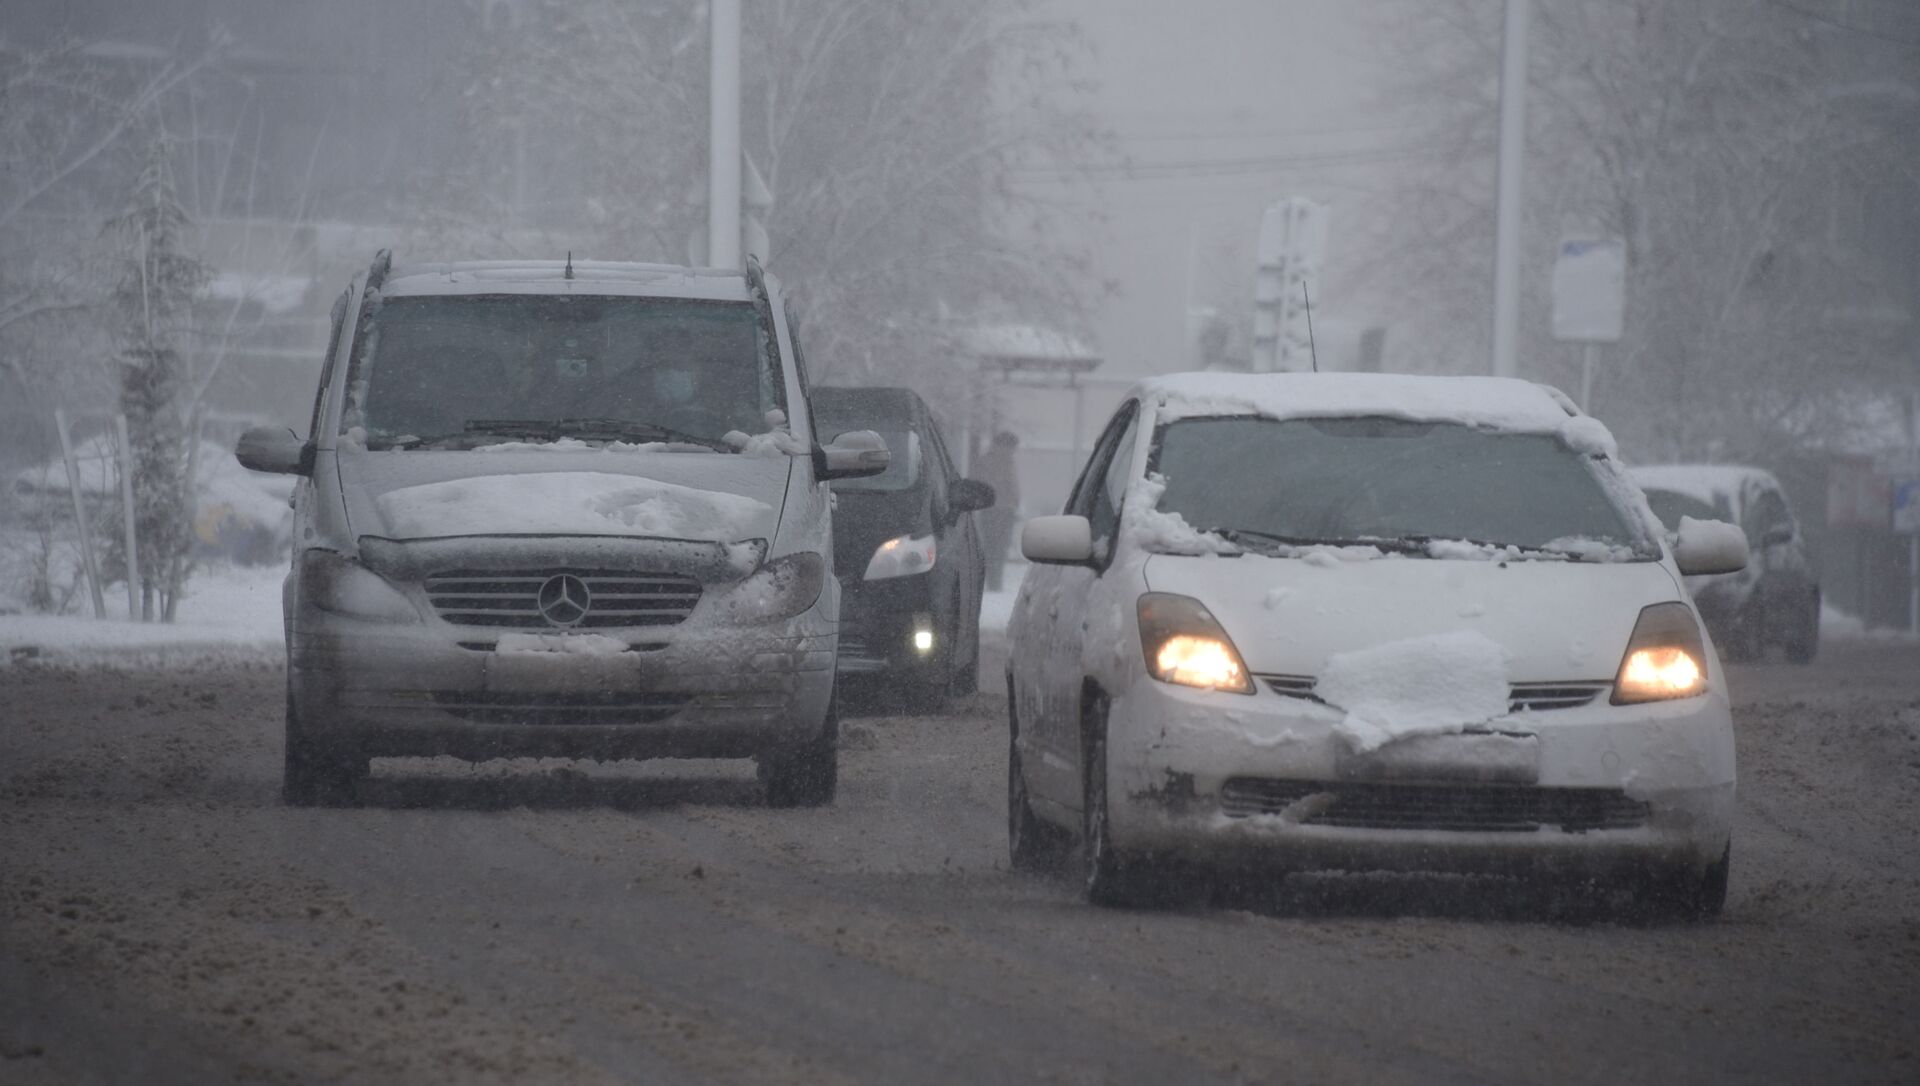 Снегопад в столице Грузии - район Варкетили в снегу и машины на дорогах - Sputnik Грузия, 1920, 18.02.2021